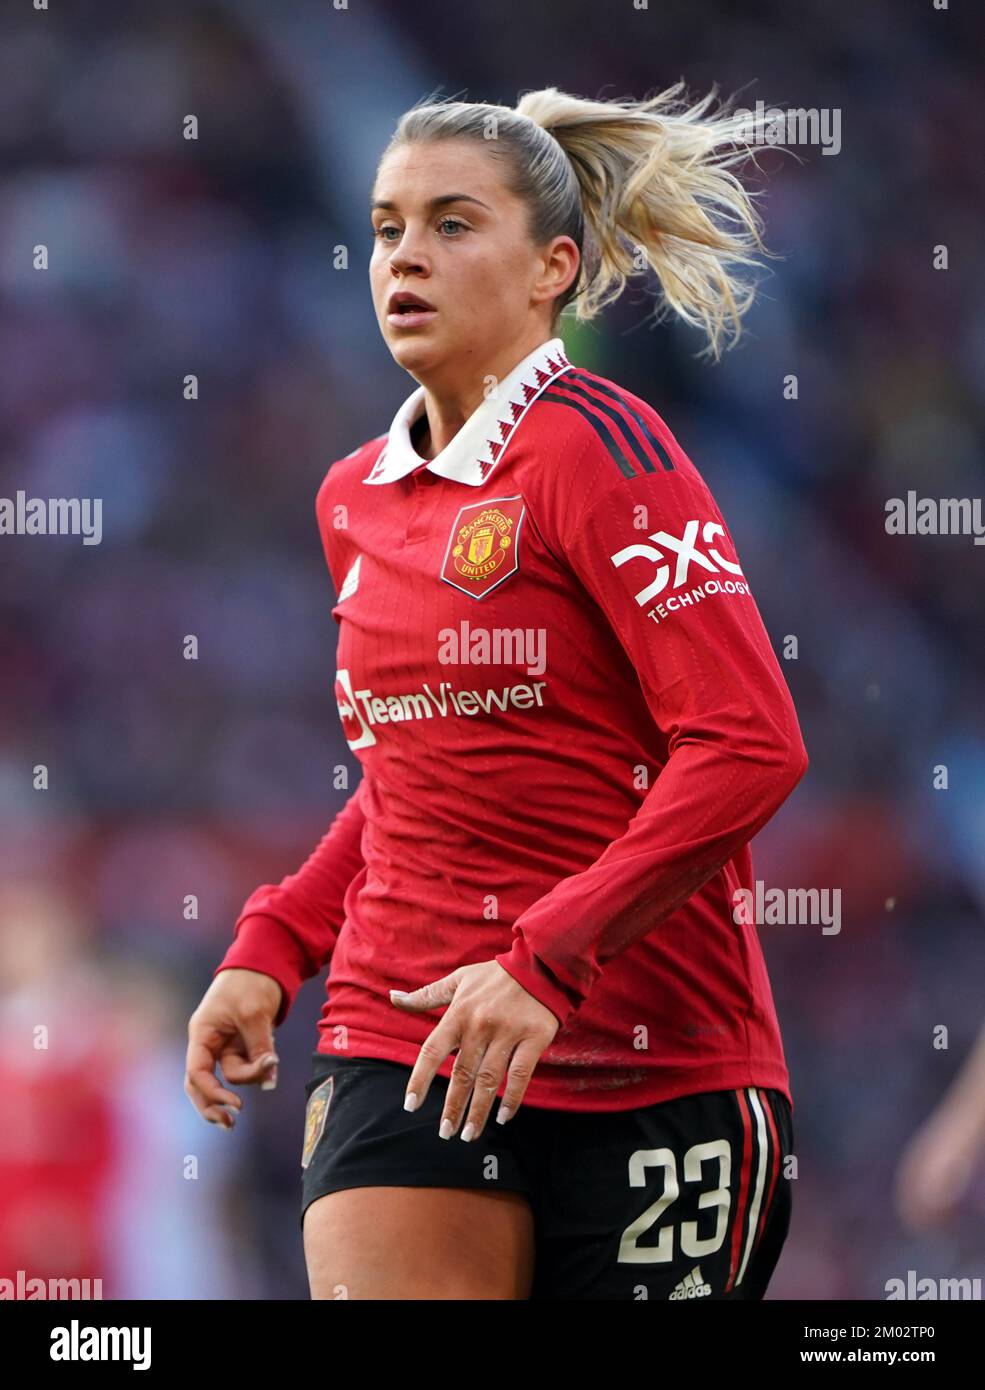 Alessia Russo del Manchester United durante el partido de la Superliga Femenina Barclays en Old Trafford, Manchester. Fecha de la foto: Sábado 3 de diciembre de 2022. Foto de stock